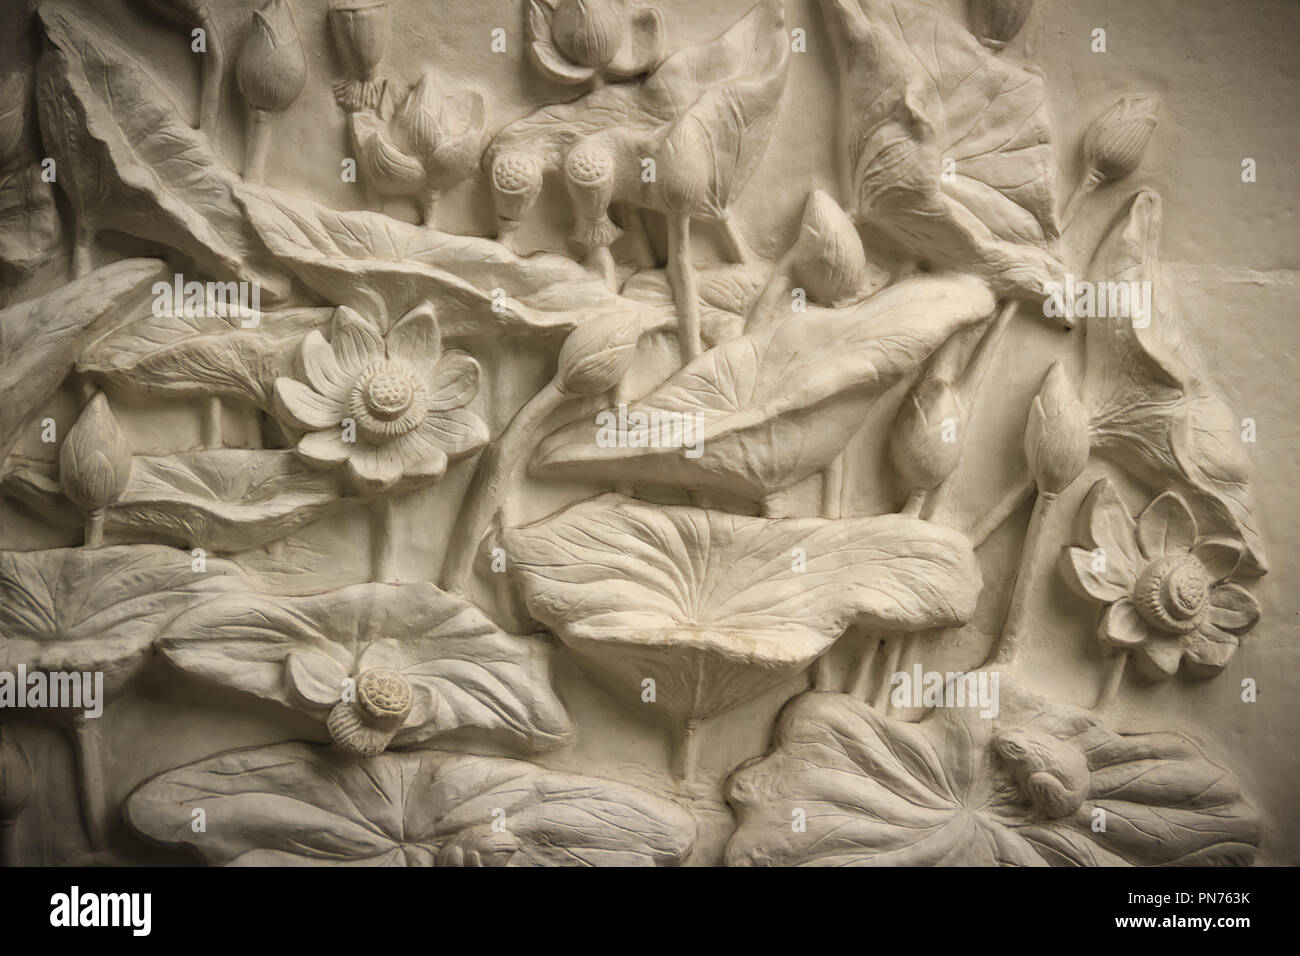 Schönen weißen Lotus Stuck auf der Mauer gemustert. Vintage White Wand  relief Stuck in Putz, stellt Lotus Blumen Hintergrund Stockfotografie -  Alamy